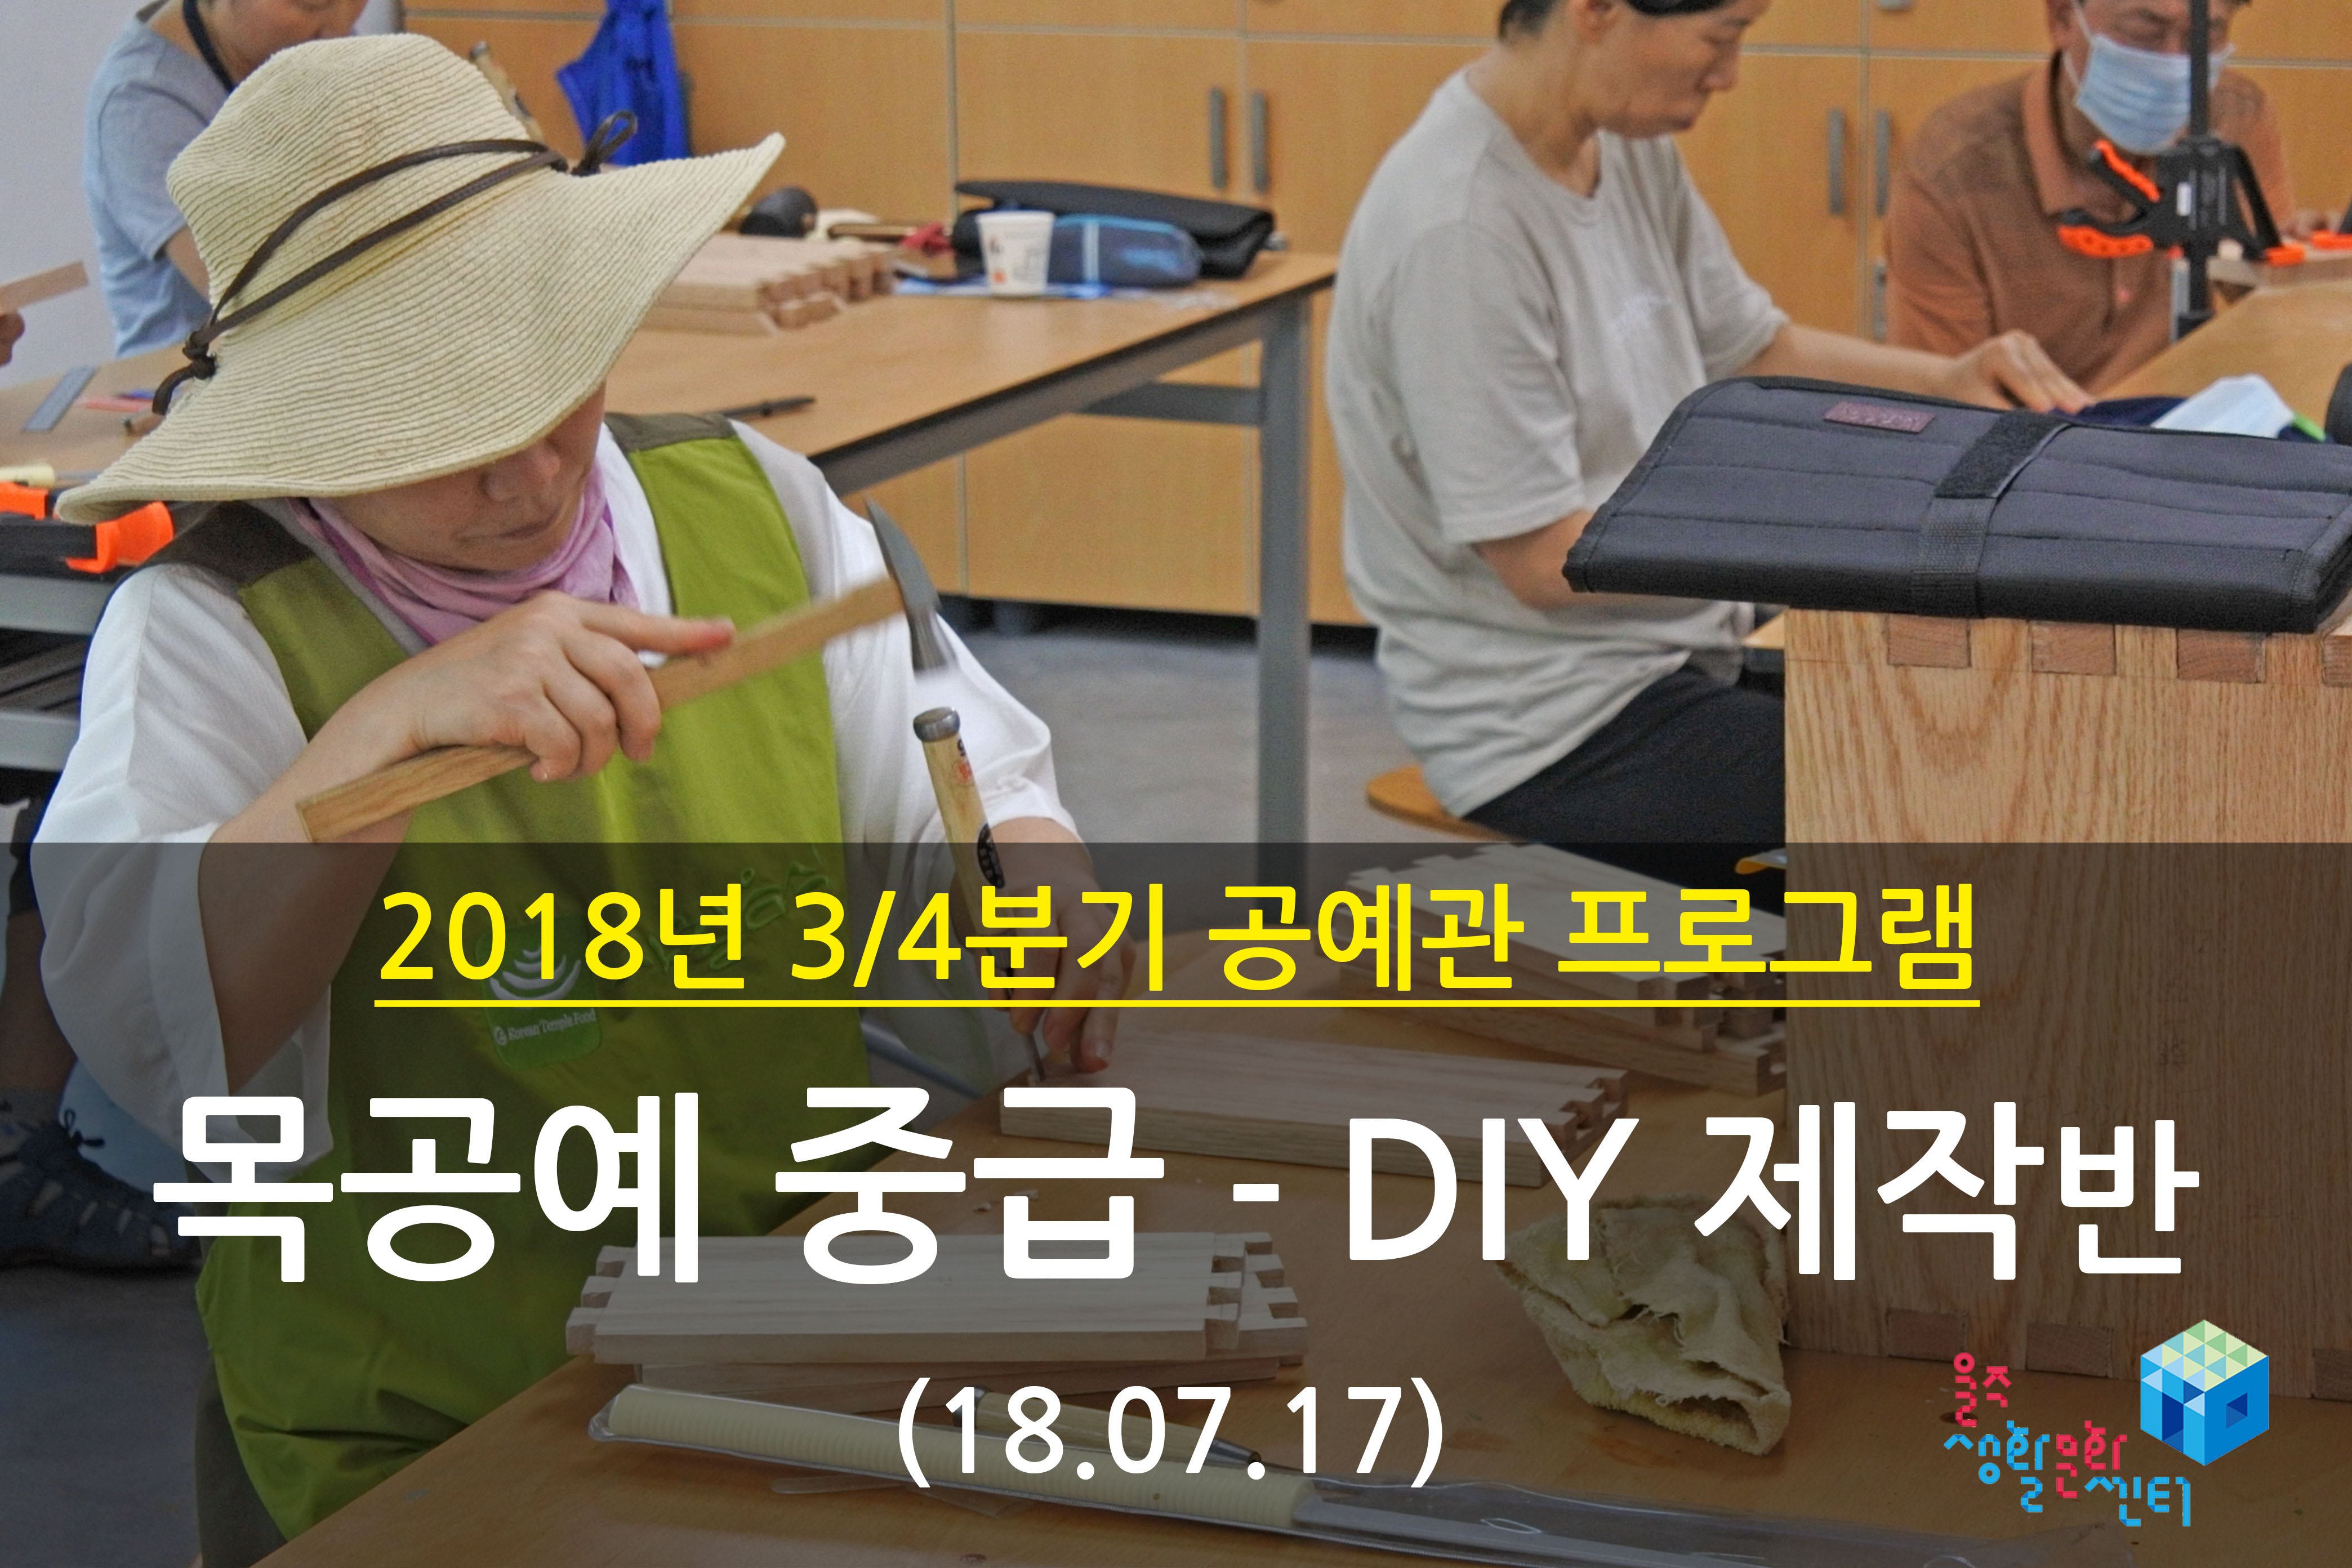 2018.07.17 _ 목공예 중급 - DIY 제작반 _ 3/4분기 3주차 수업